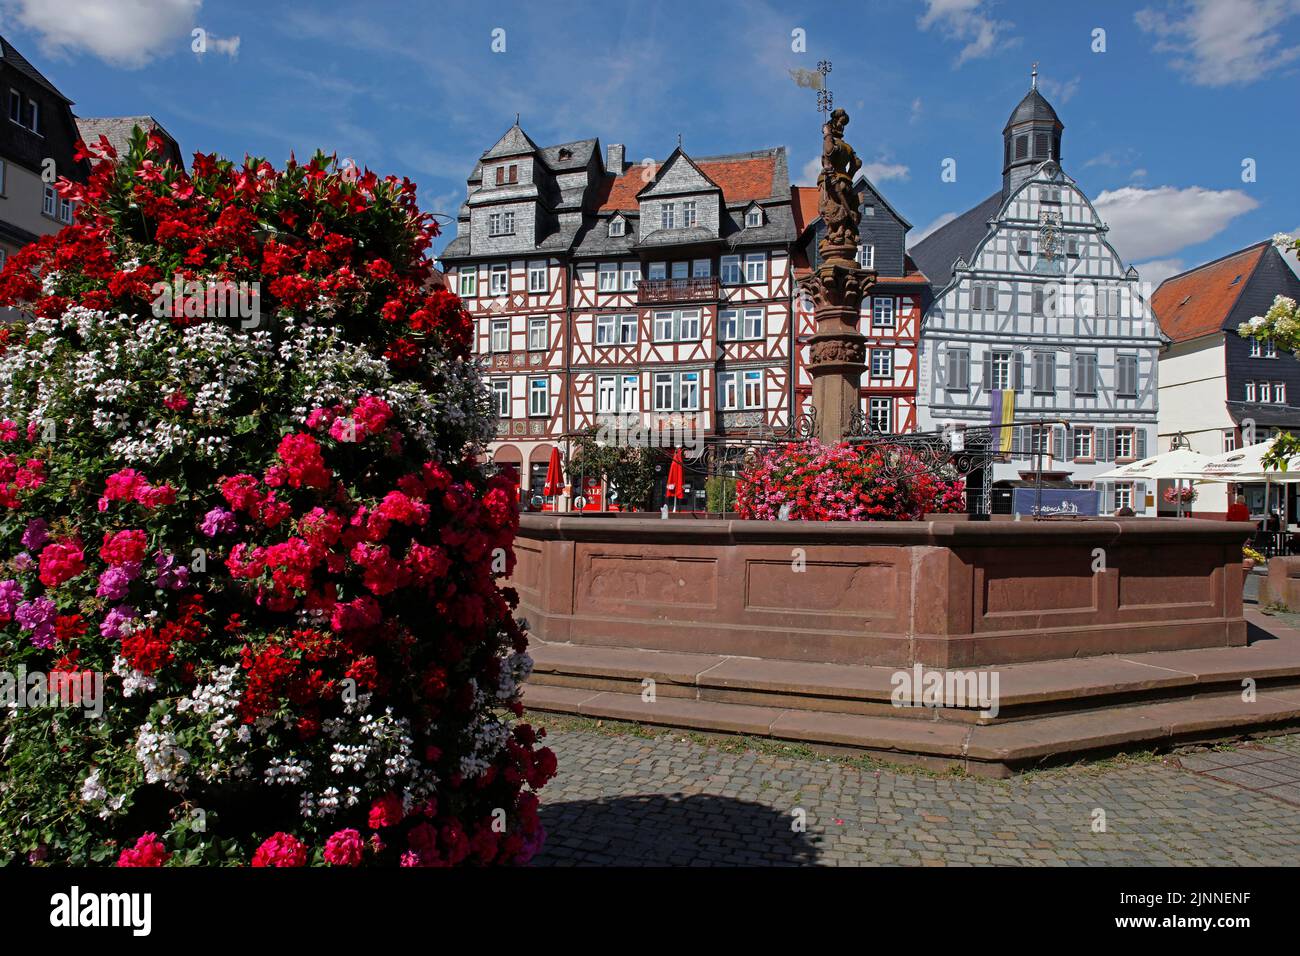 Place du marché. Fontaine du marché, ancienne mairie à colombages, 16th siècle, maisons à colombages, Butzbach, Hesse, Allemagne Banque D'Images